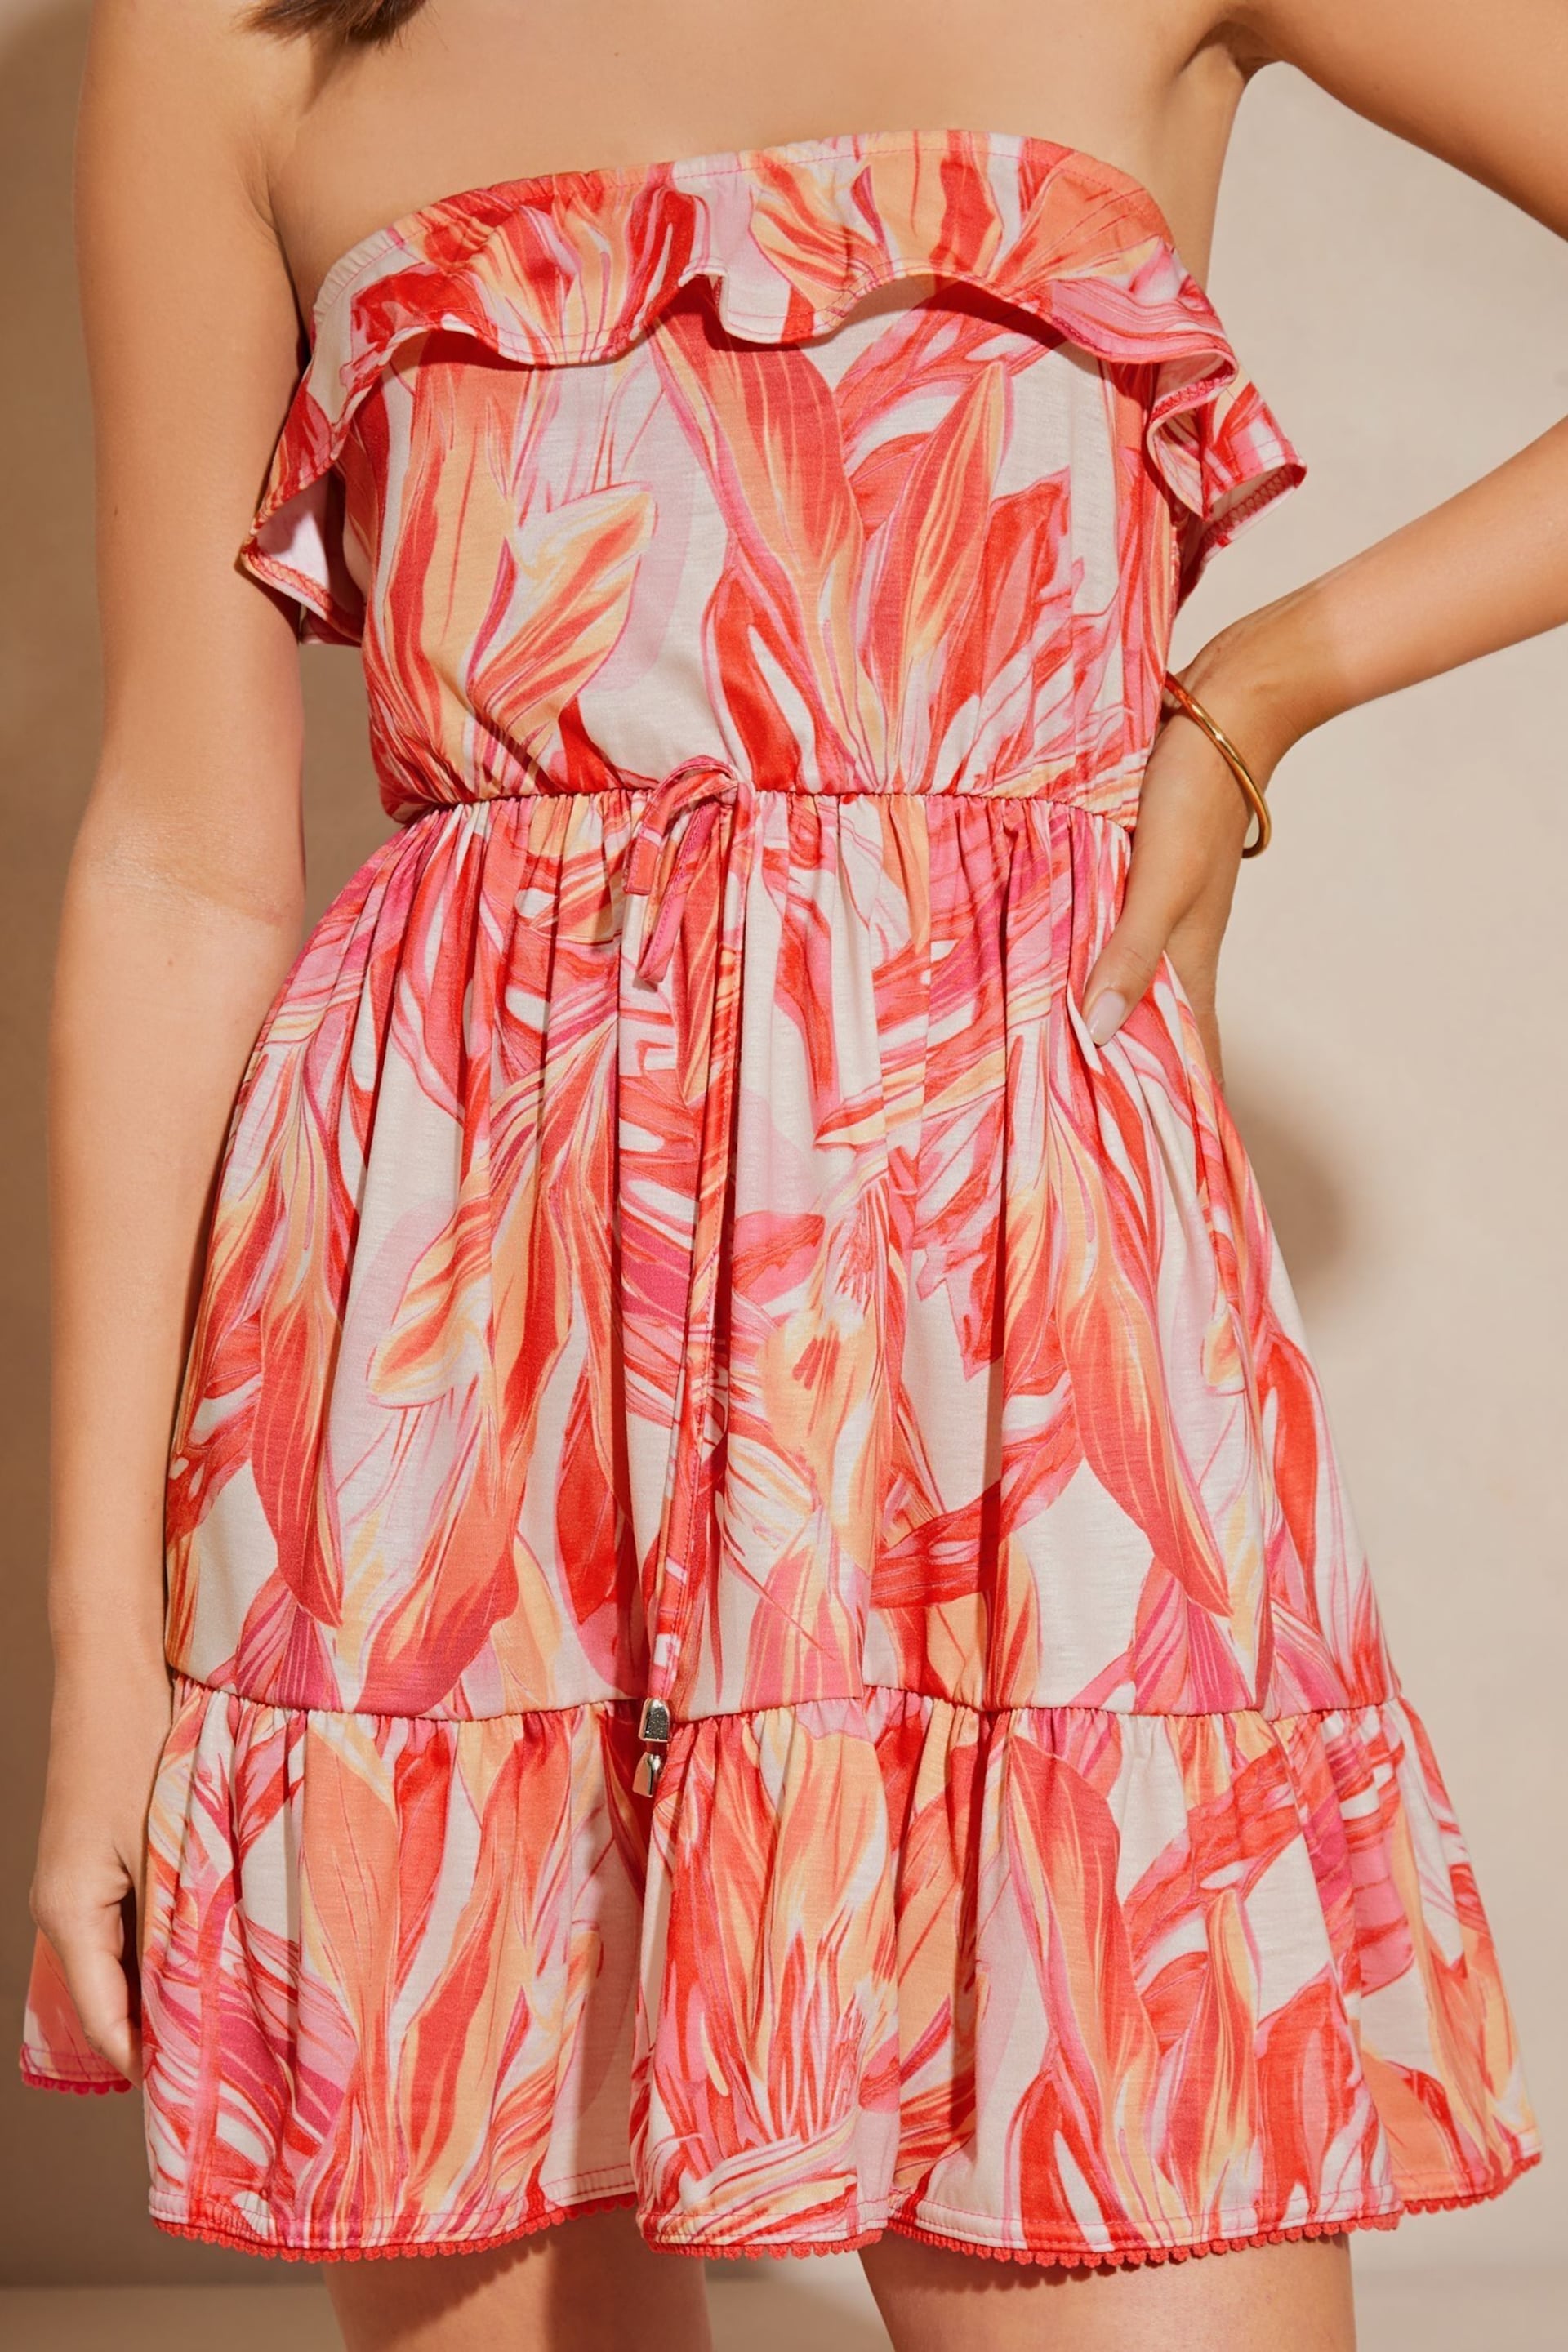 Lipsy Pink Bandeau Ruffle Summer Holiday Jersey Mini Dress - Image 4 of 4